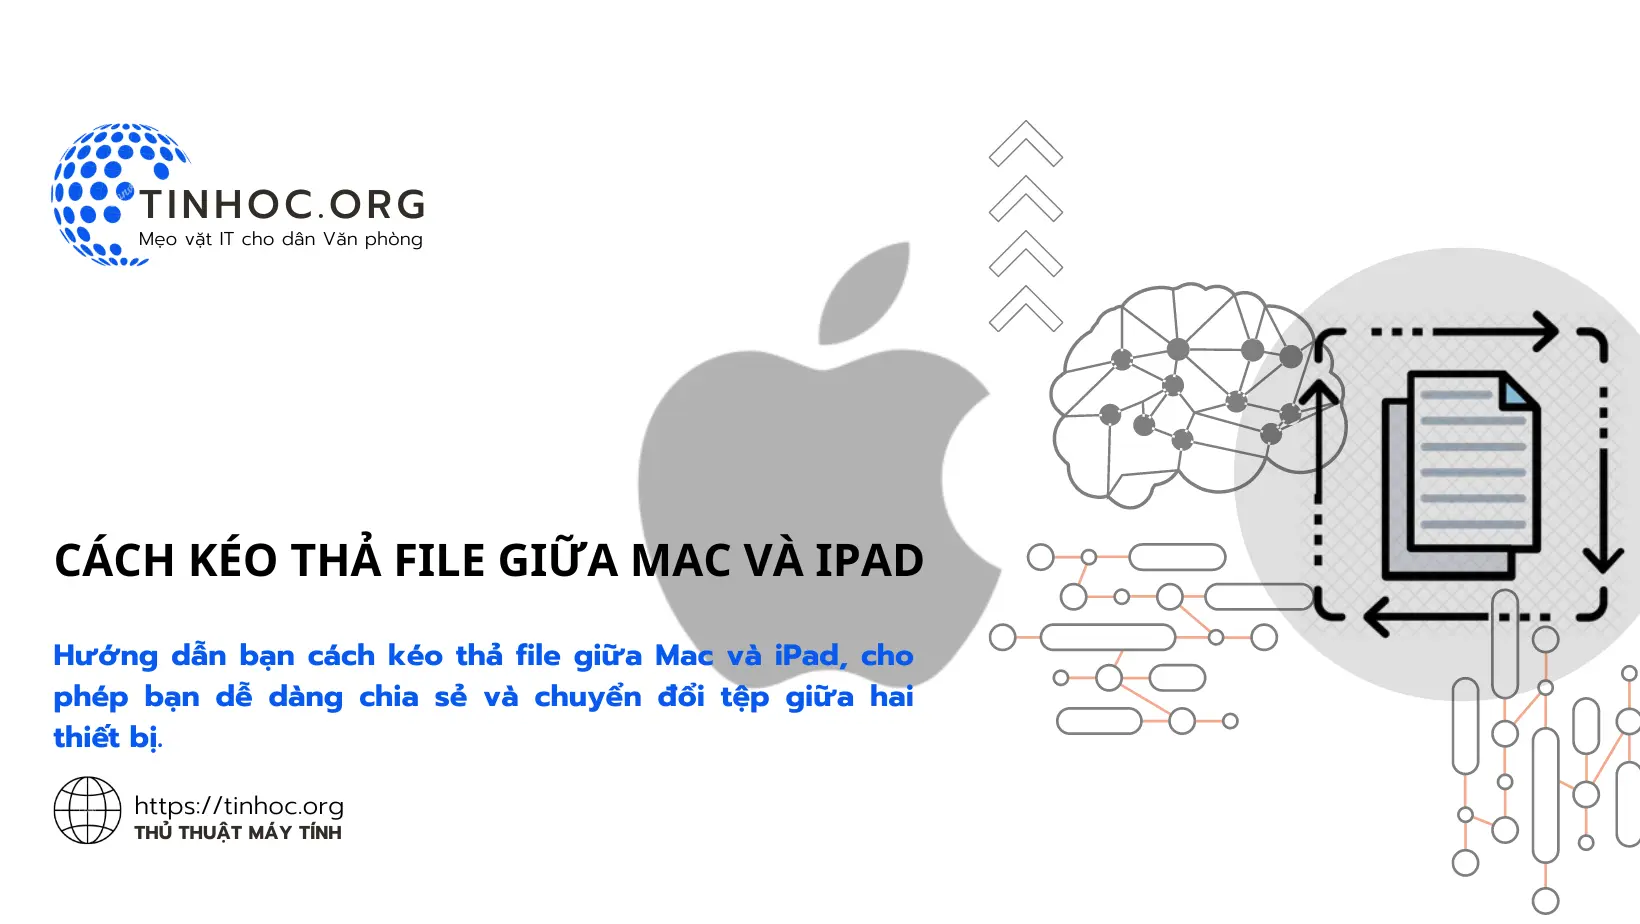 Cách kéo thả file giữa Mac và iPad